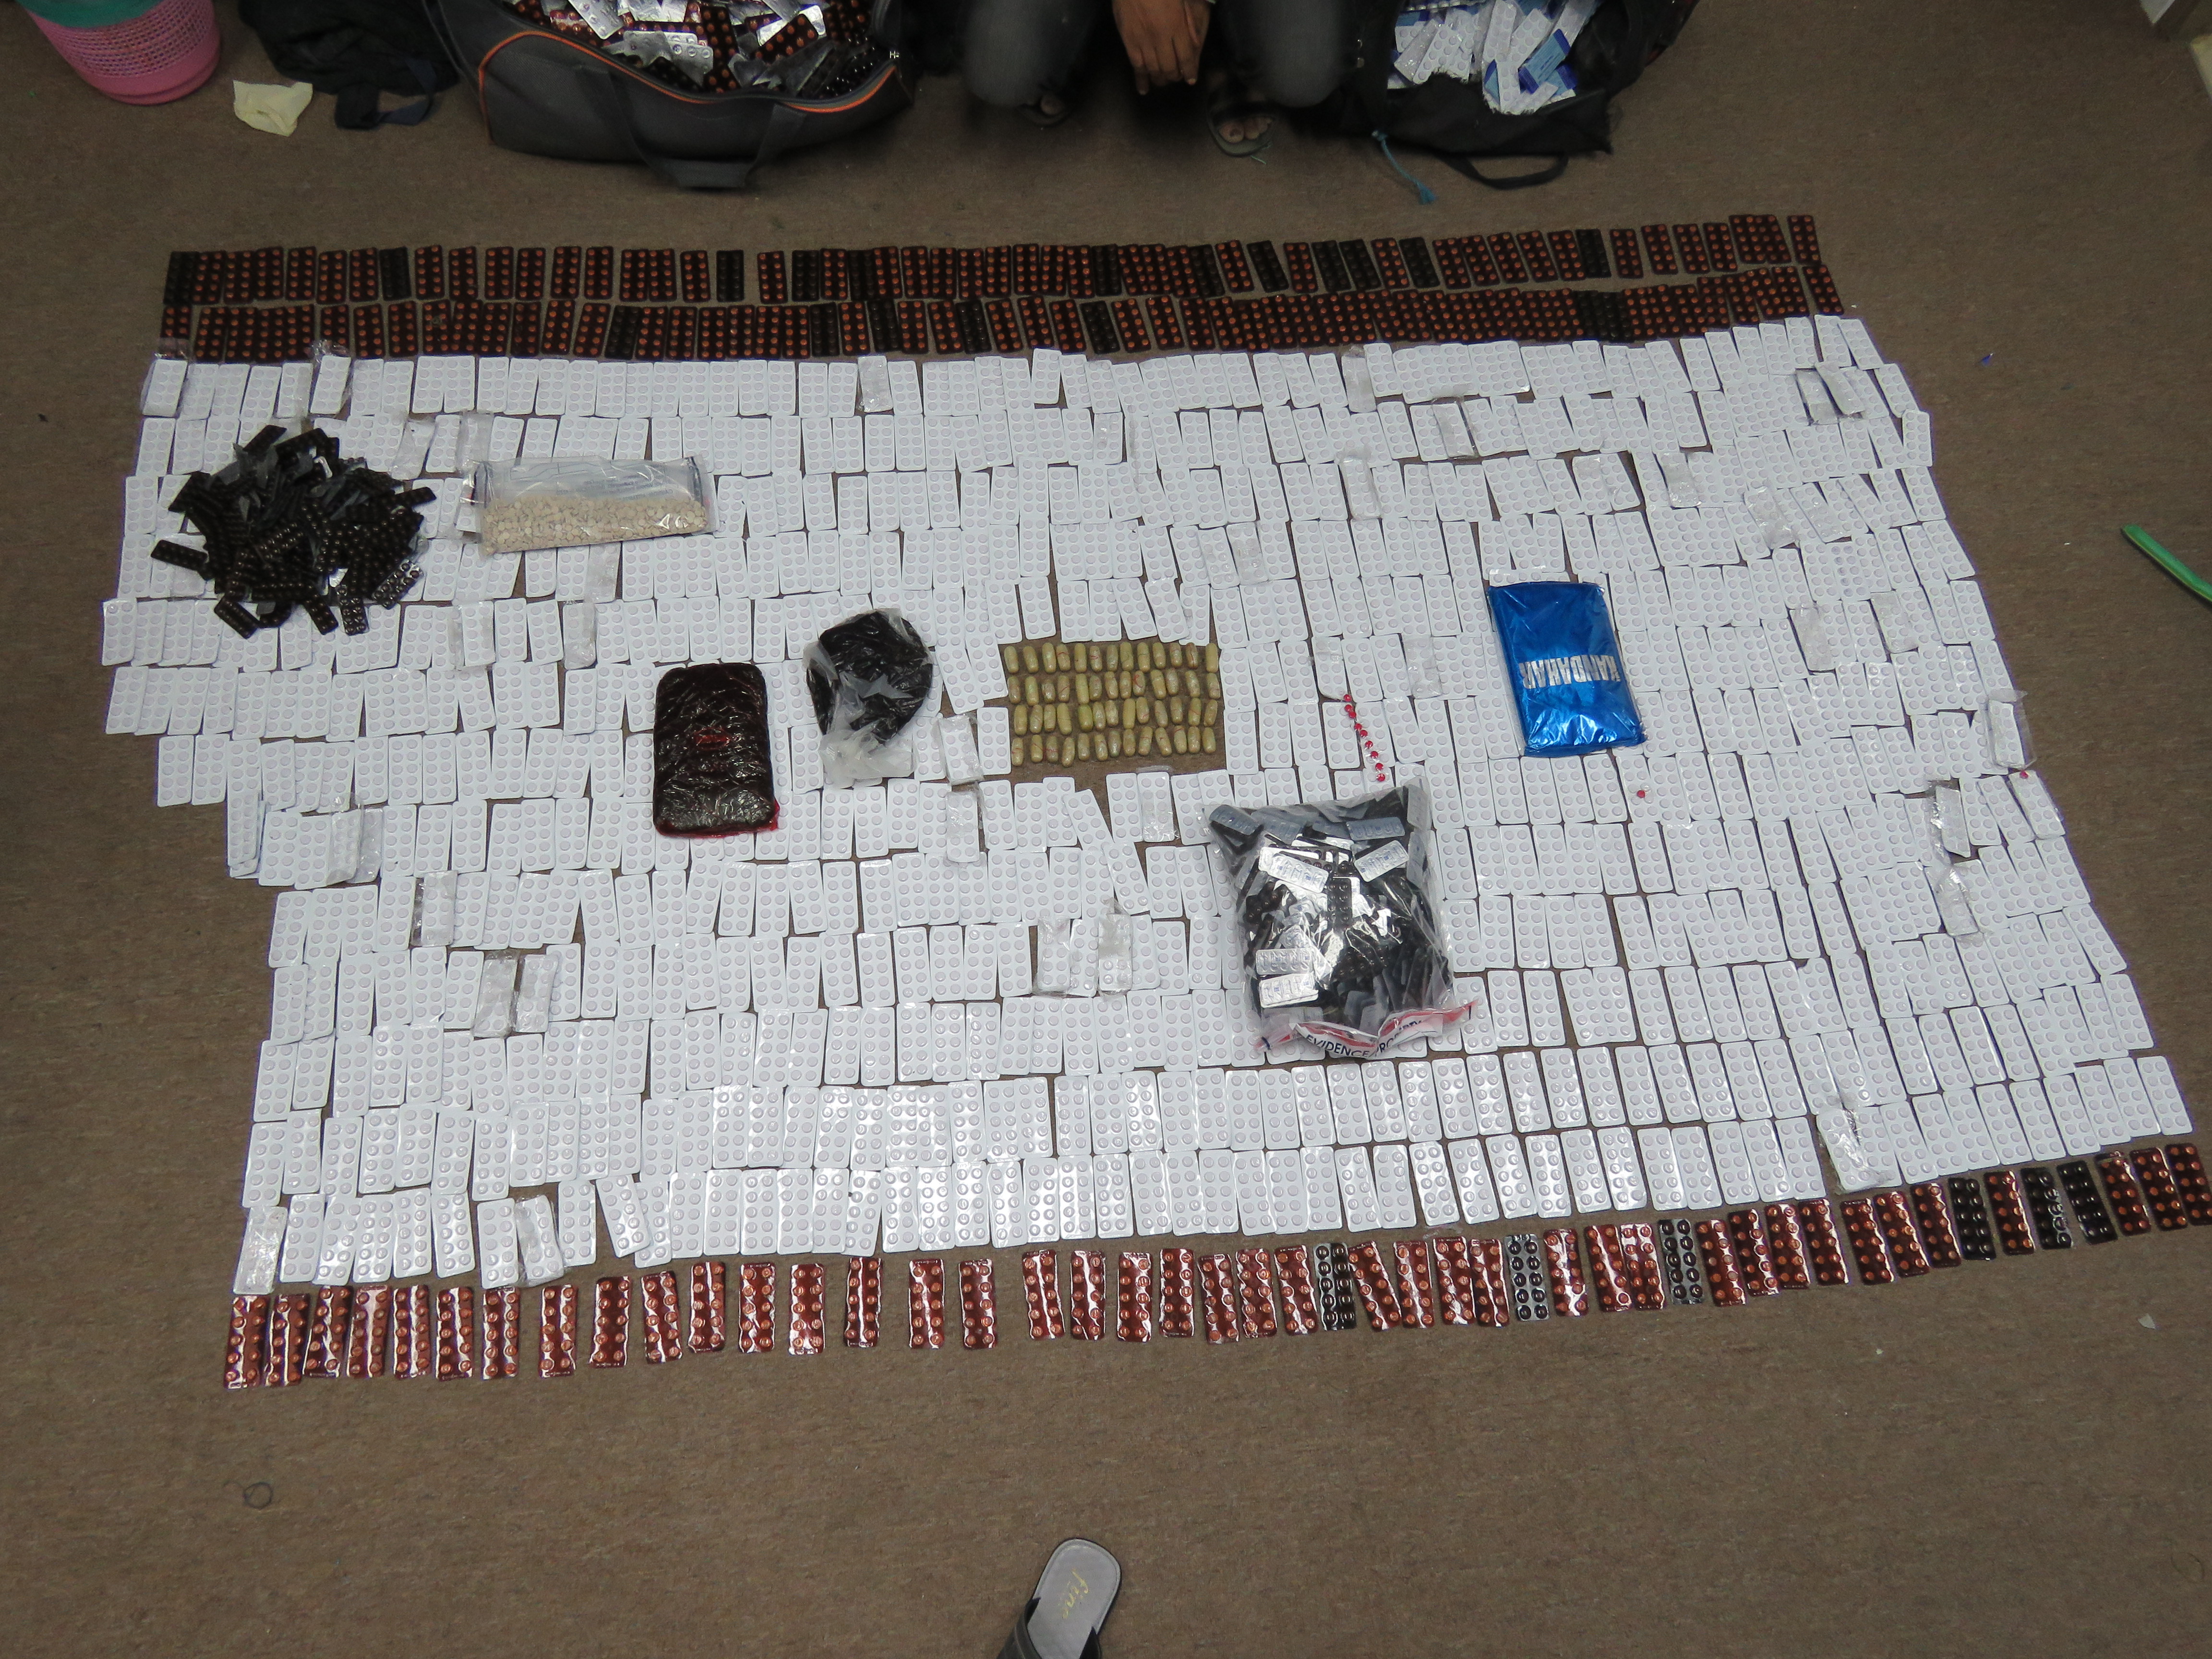 الشرطة تلقي القبض على مهرب مخدرات في السيب دخل إلى السلطنة بطريقة غير مشروعة